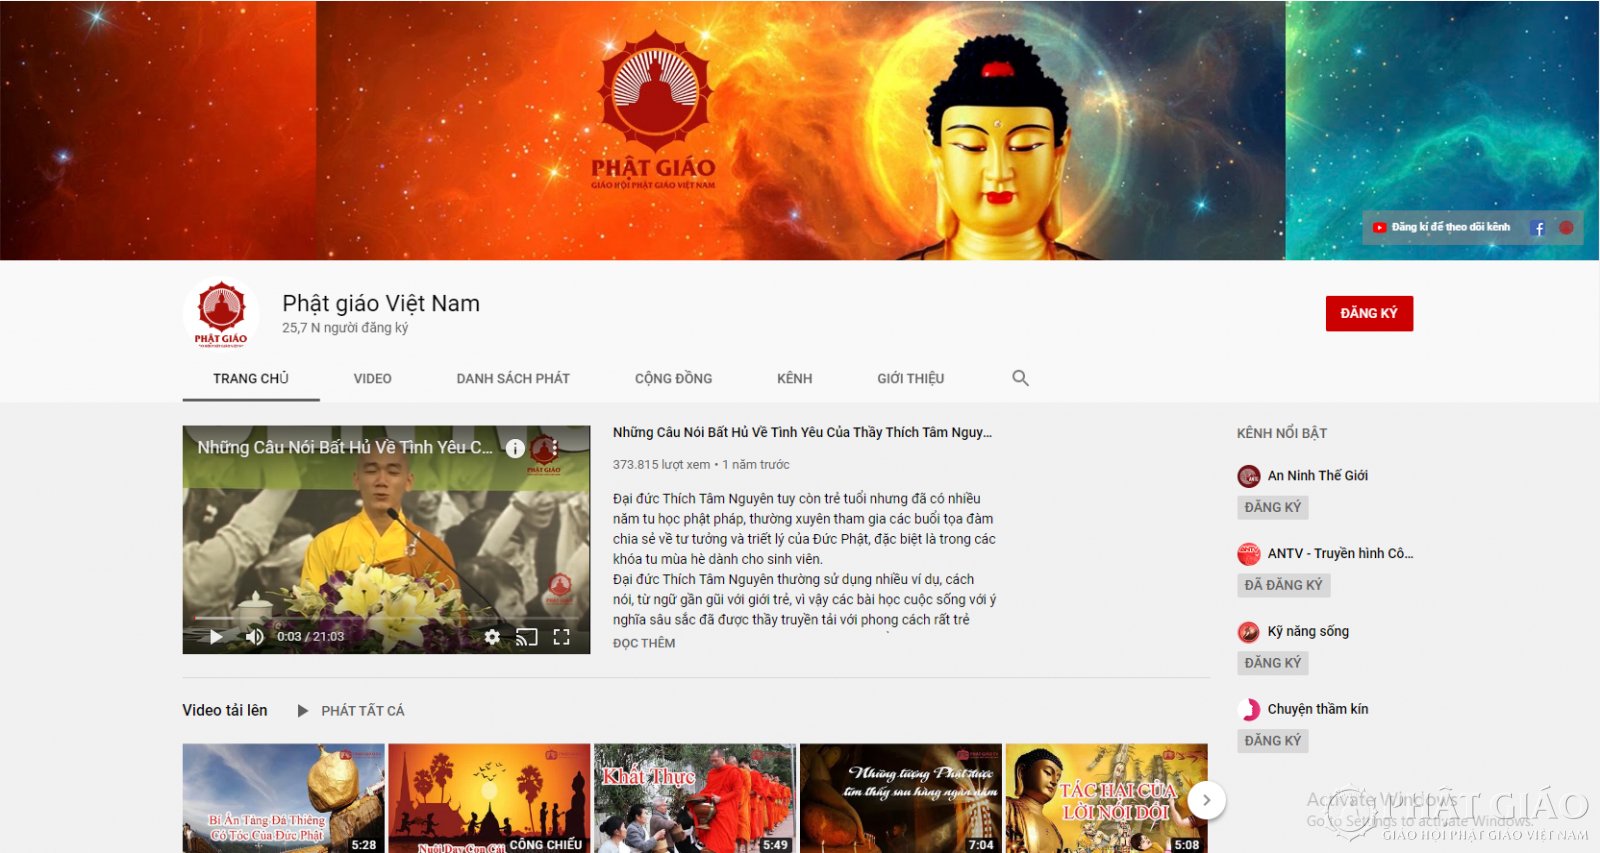 Kênh Youtube Phật giáo Việt Nam đem đến cho bạn những video giáo dục và tâm linh vô cùng bổ ích, cùng những bức ảnh đẹp về Phật, những câu chuyện cổ tích và những kinh điển giúp bạn vượt qua những khó khăn trong cuộc sống.